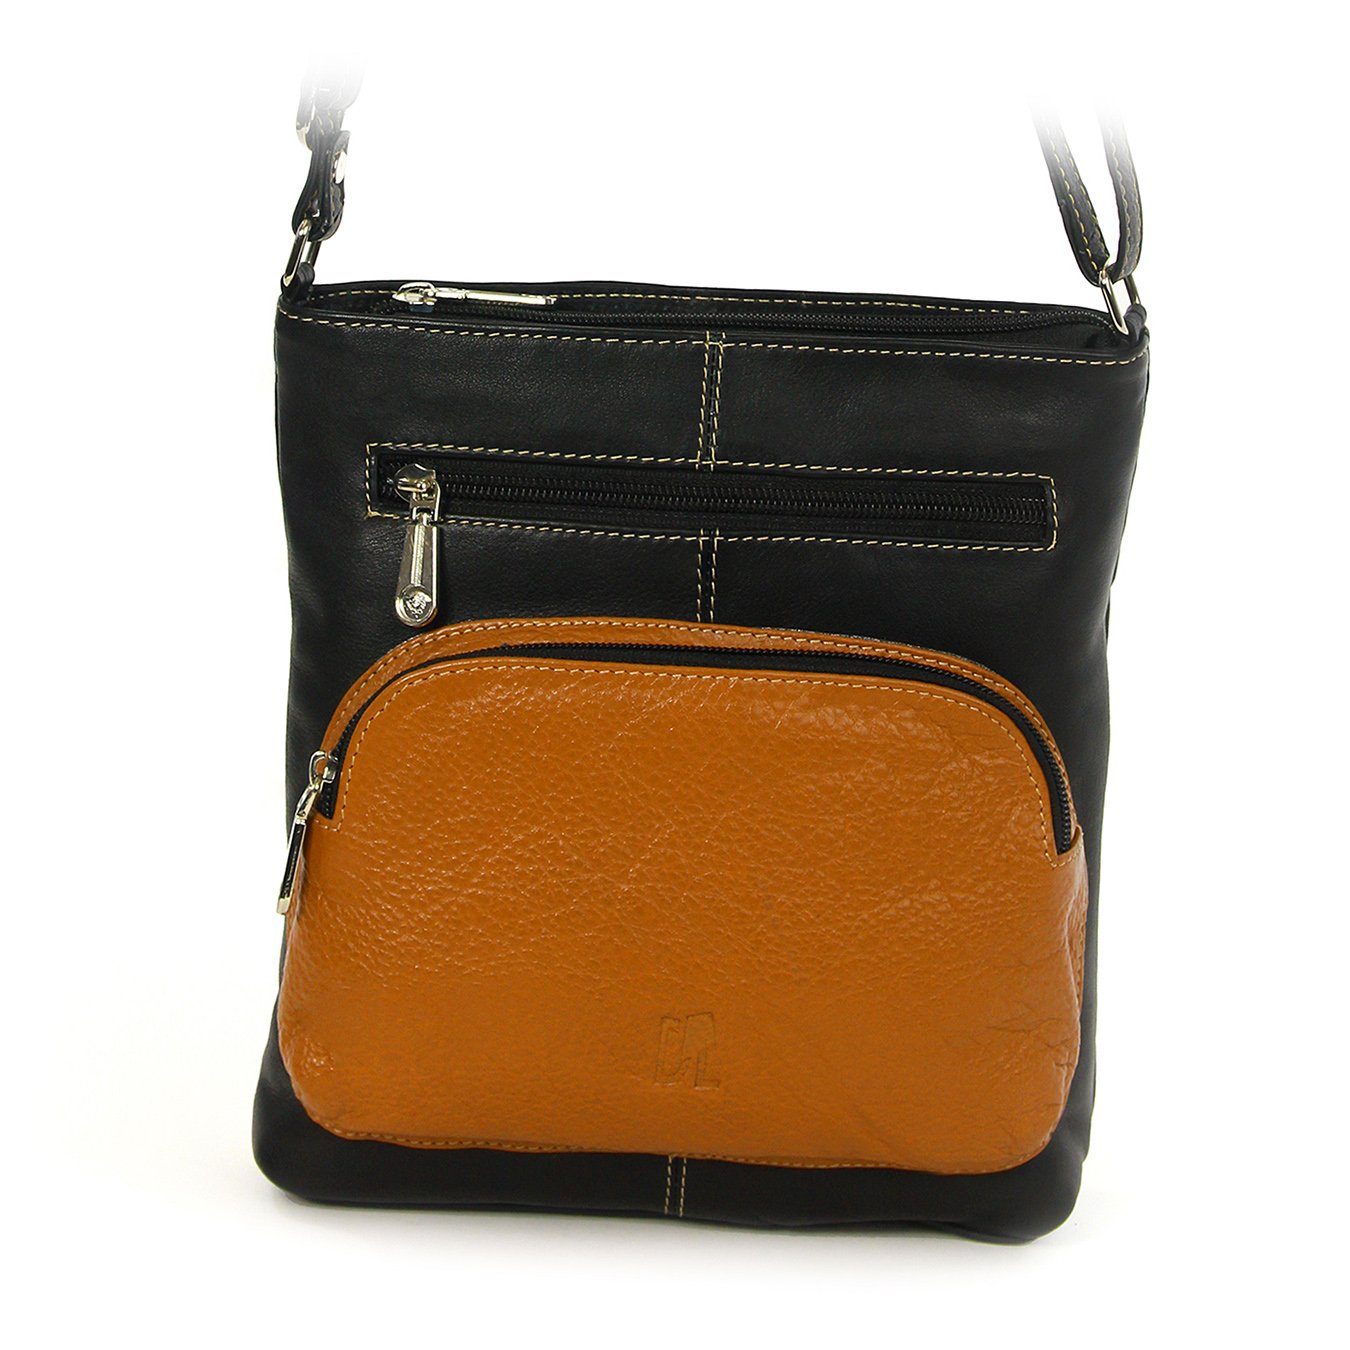 DrachenLeder Handtasche OTZ900X DrachenLeder Damen Handtasche (Handtasche), Damen Tasche, Echtleder schwarz, braun schwarz-braun